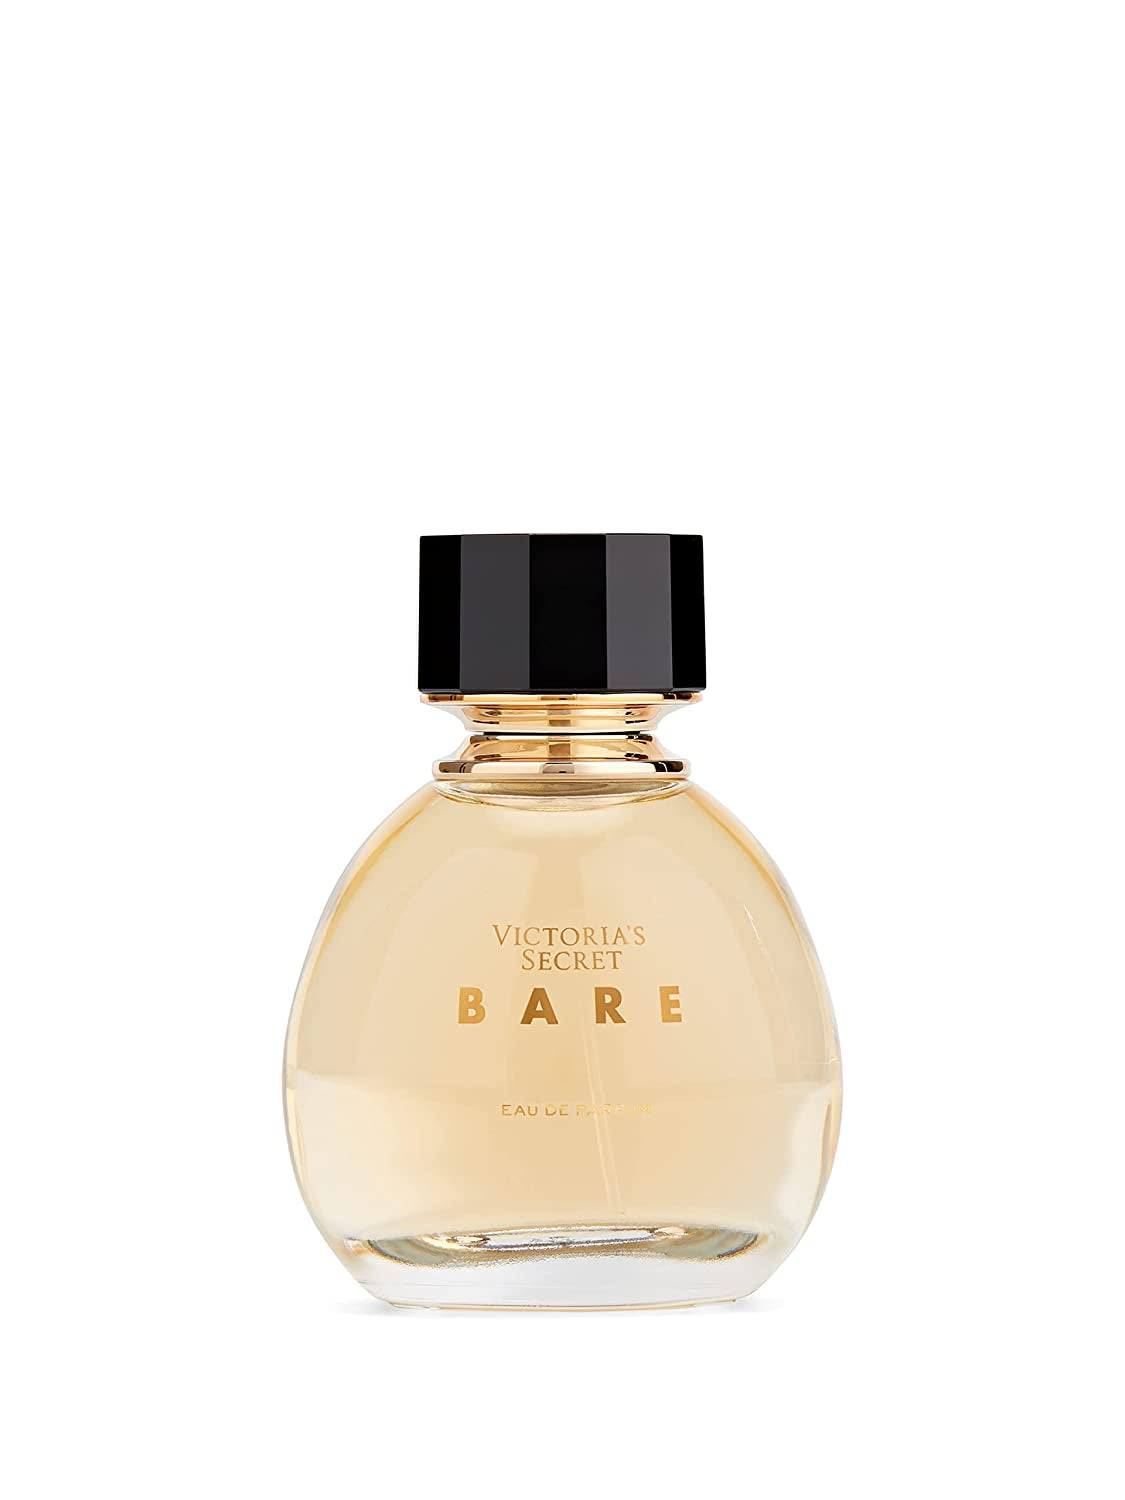 Victoria's Secret Bare 3.4oz Eau de Parfum